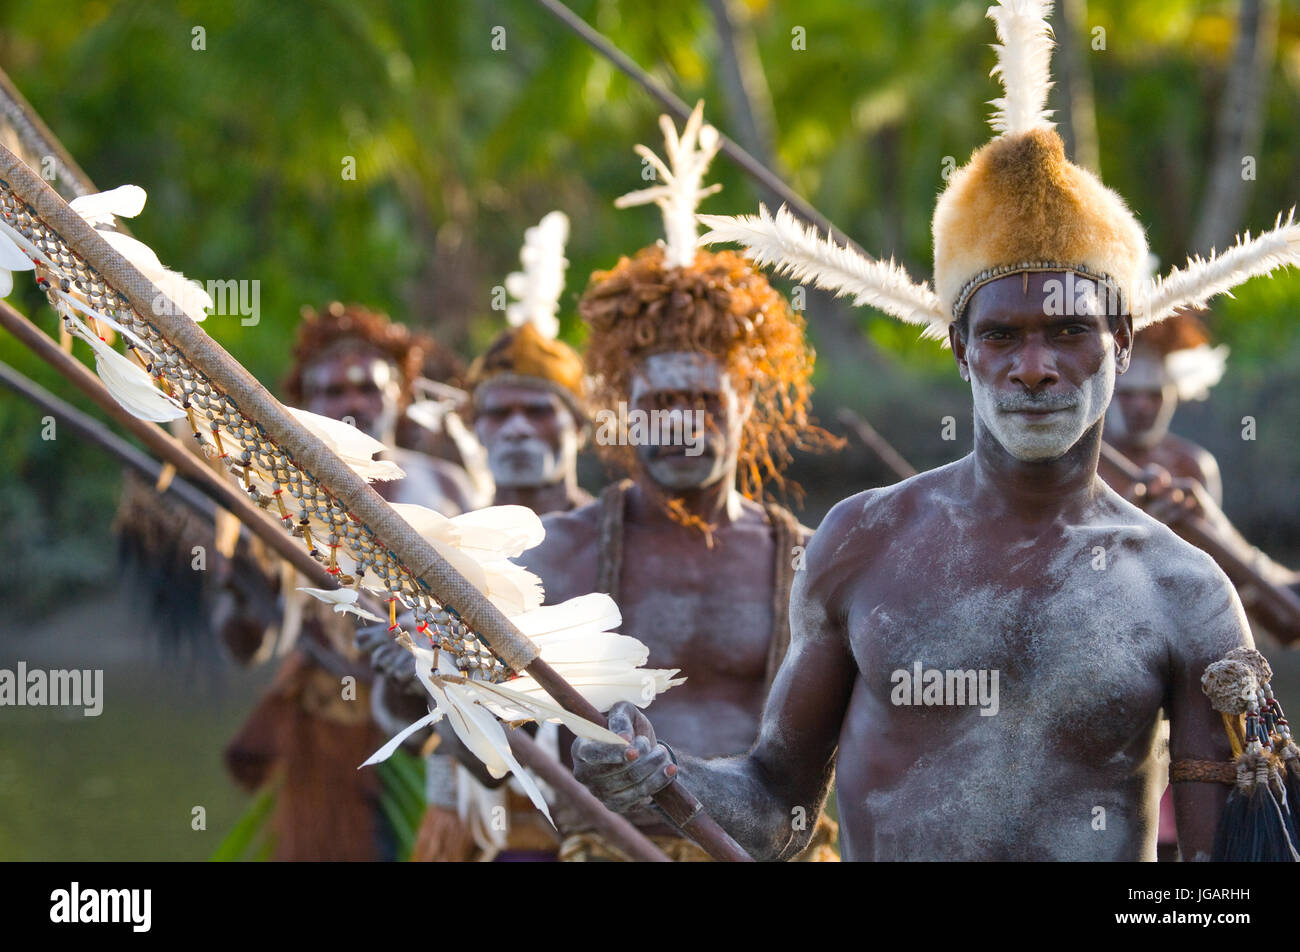 Indonesien, IRIAN JAYA, ASMAT Provinz, JOW Dorf - Januar 19: Krieger Asmat Stamm sind traditionelle Kanu verwenden. Stockfoto